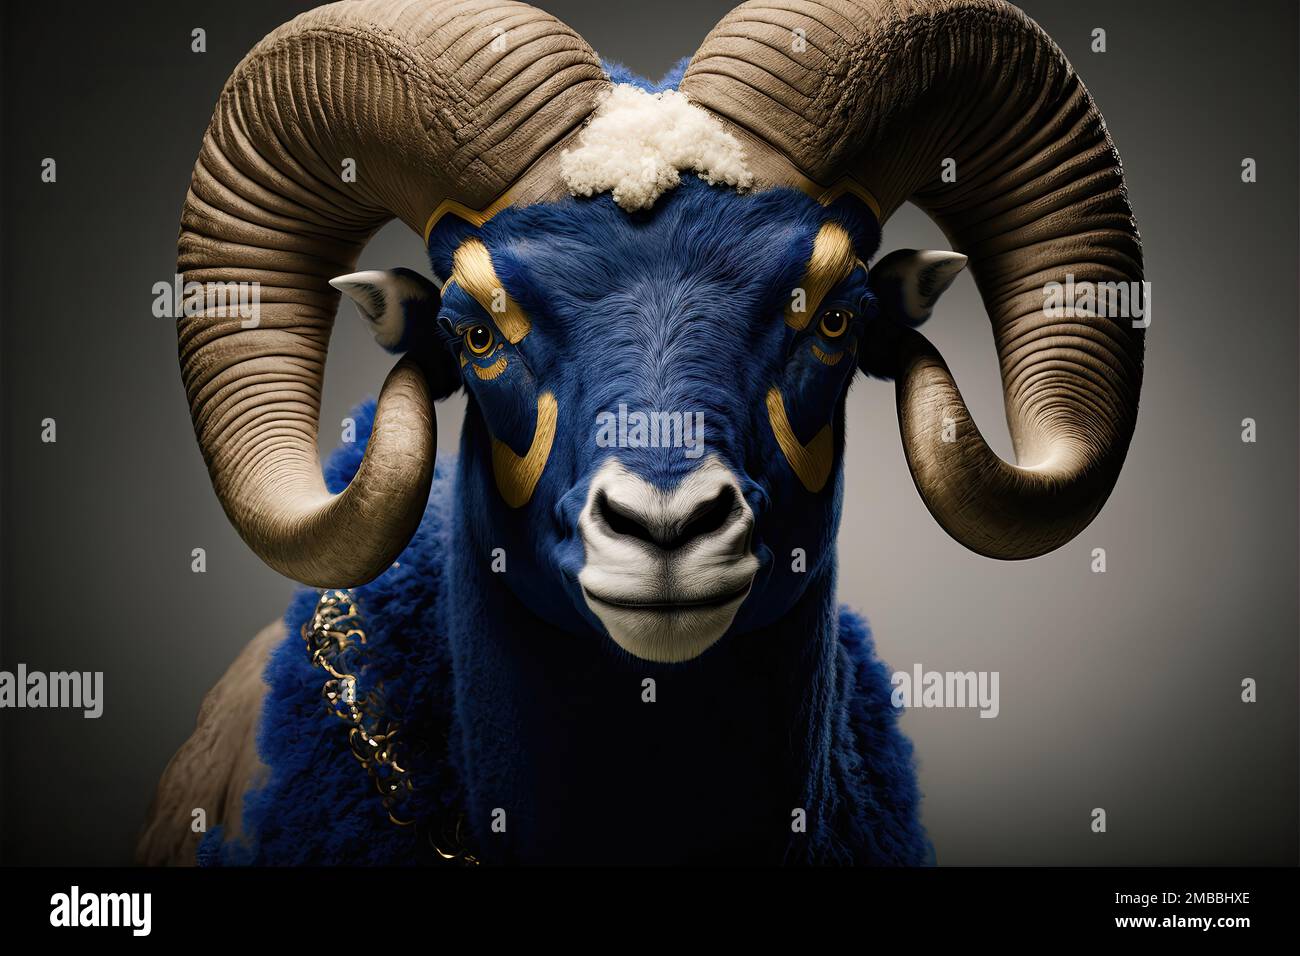 La mascotte dei Los Angeles Rams, una squadra di calcio americana professionista, si chiama Rampage. Rampage è un grande montone antropomorfo con un blu e voi Foto Stock